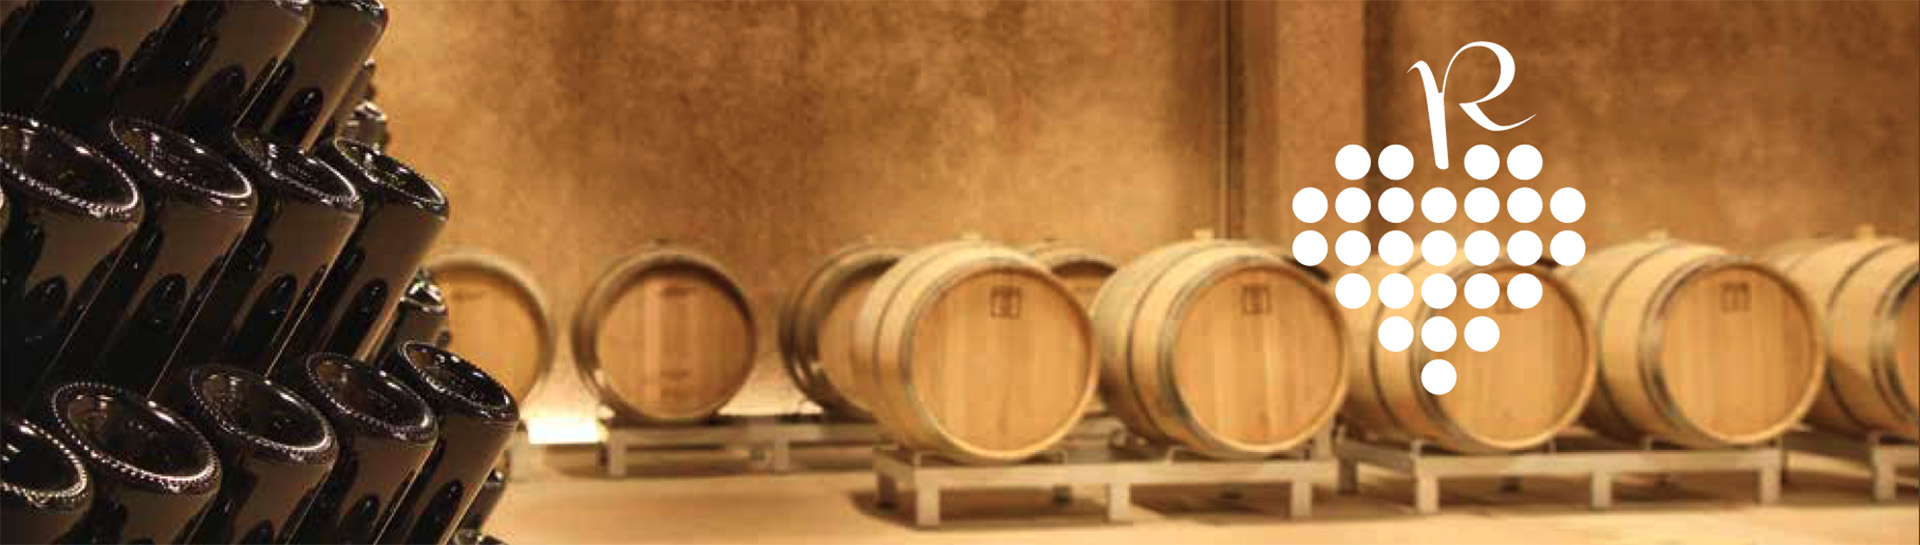 Romantica barrels